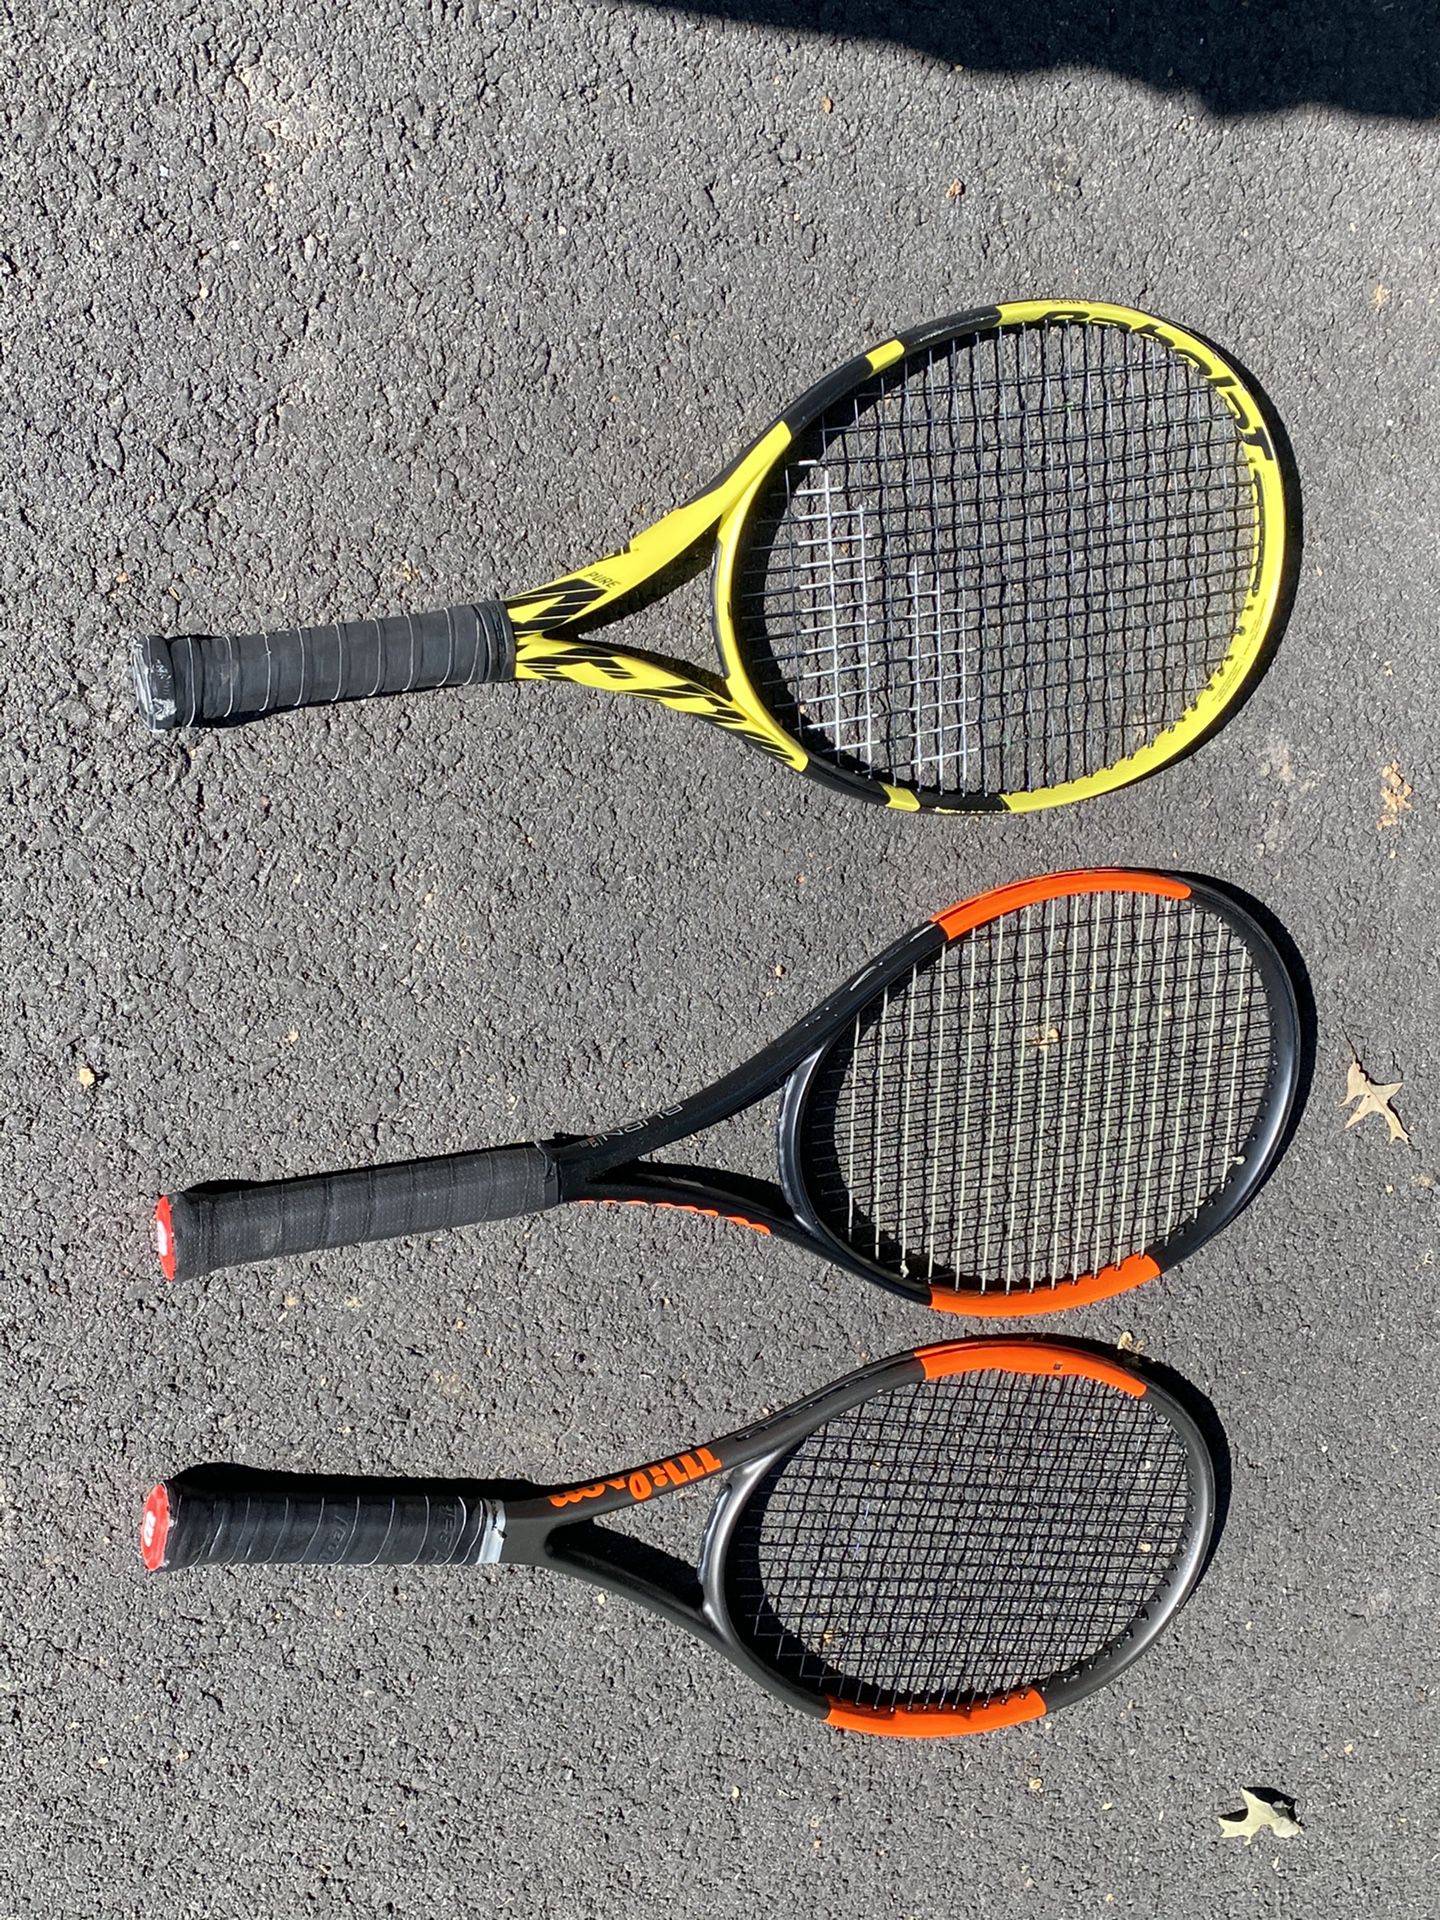 Tennis racquets - $50 each